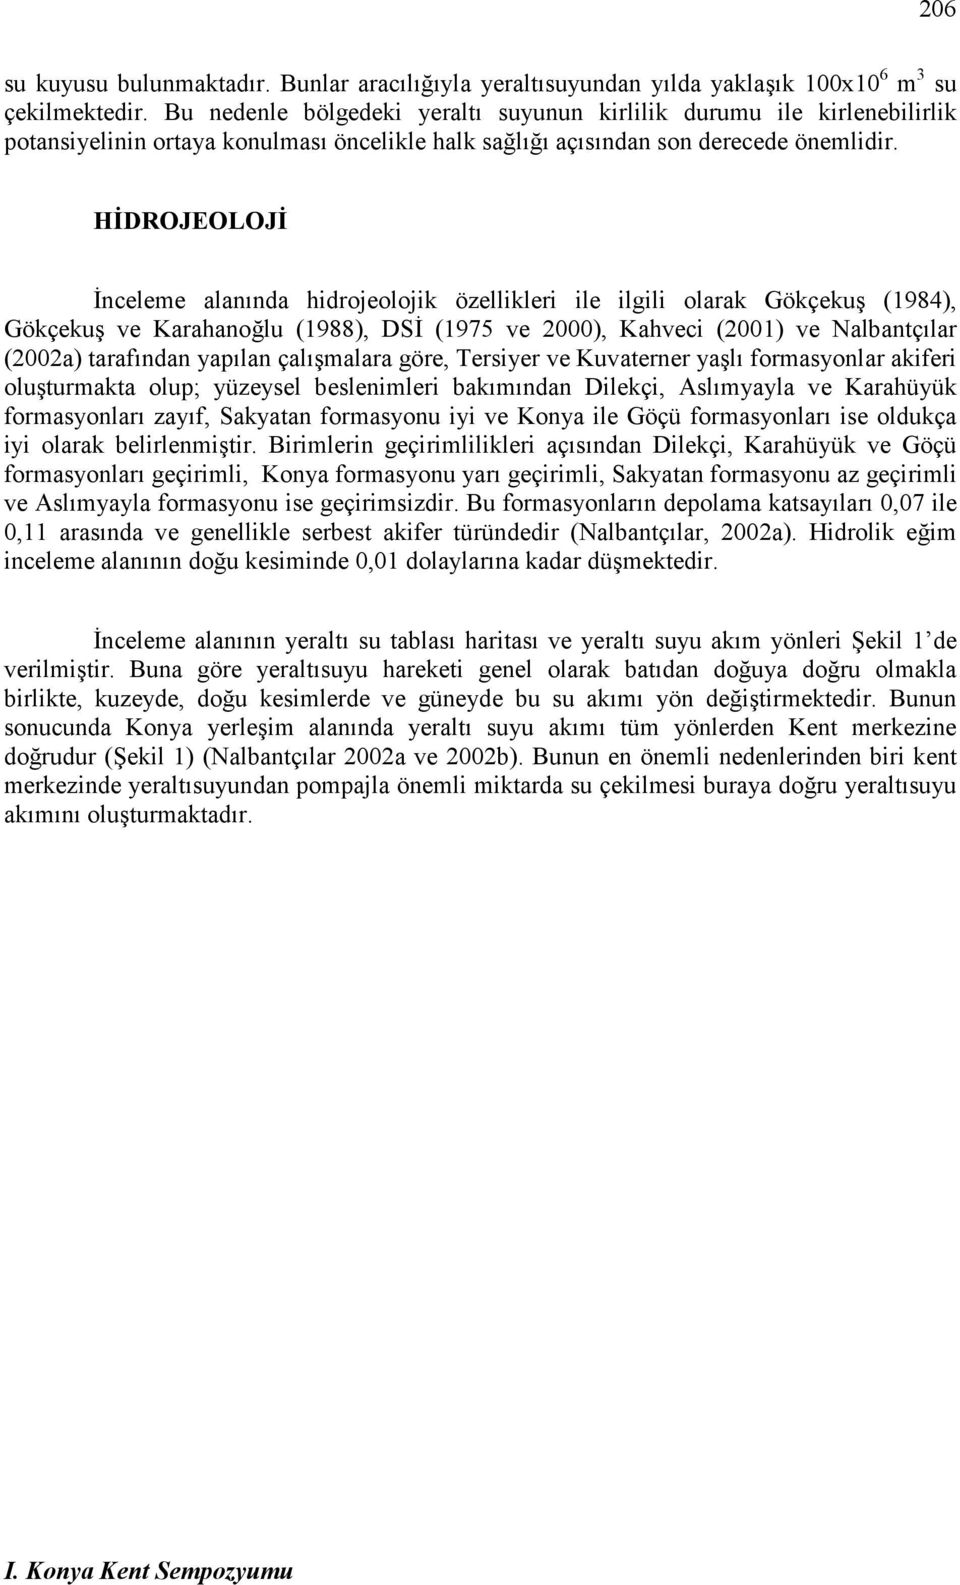 HĐDROJEOLOJĐ Đnceleme alanında hidrojeolojik özellikleri ile ilgili olarak Gökçekuş (1984), Gökçekuş ve Karahanoğlu (1988), DSĐ (1975 ve 2000), Kahveci (2001) ve Nalbantçılar (2002a) tarafından